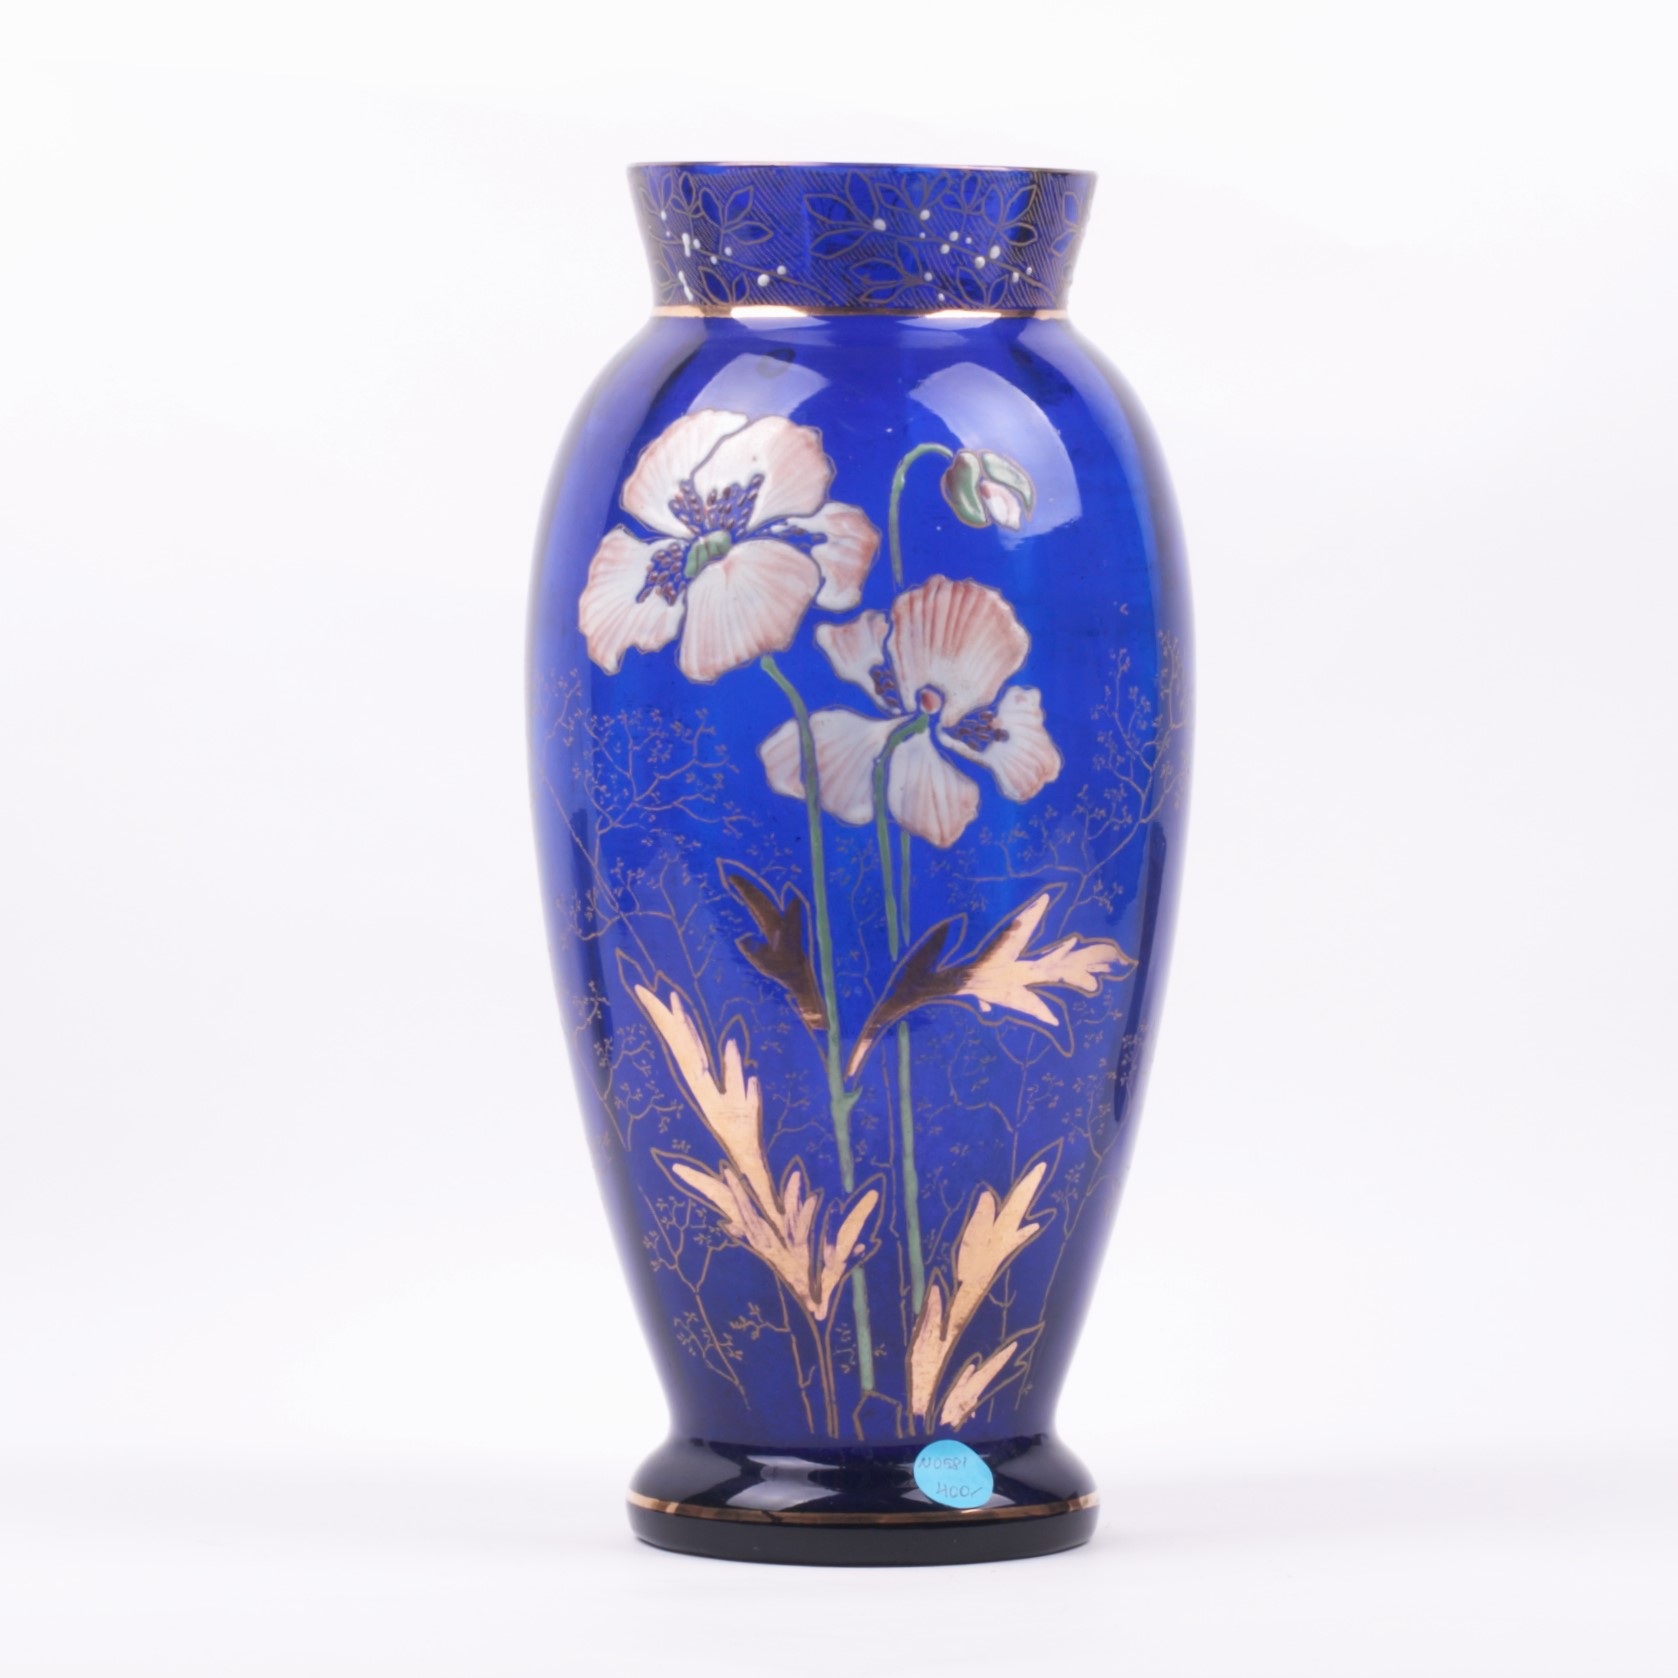 en Blue glass vase.:zh 蓝 玻 璃 花 瓶: - Antique weapons, collectibles, silver, ...